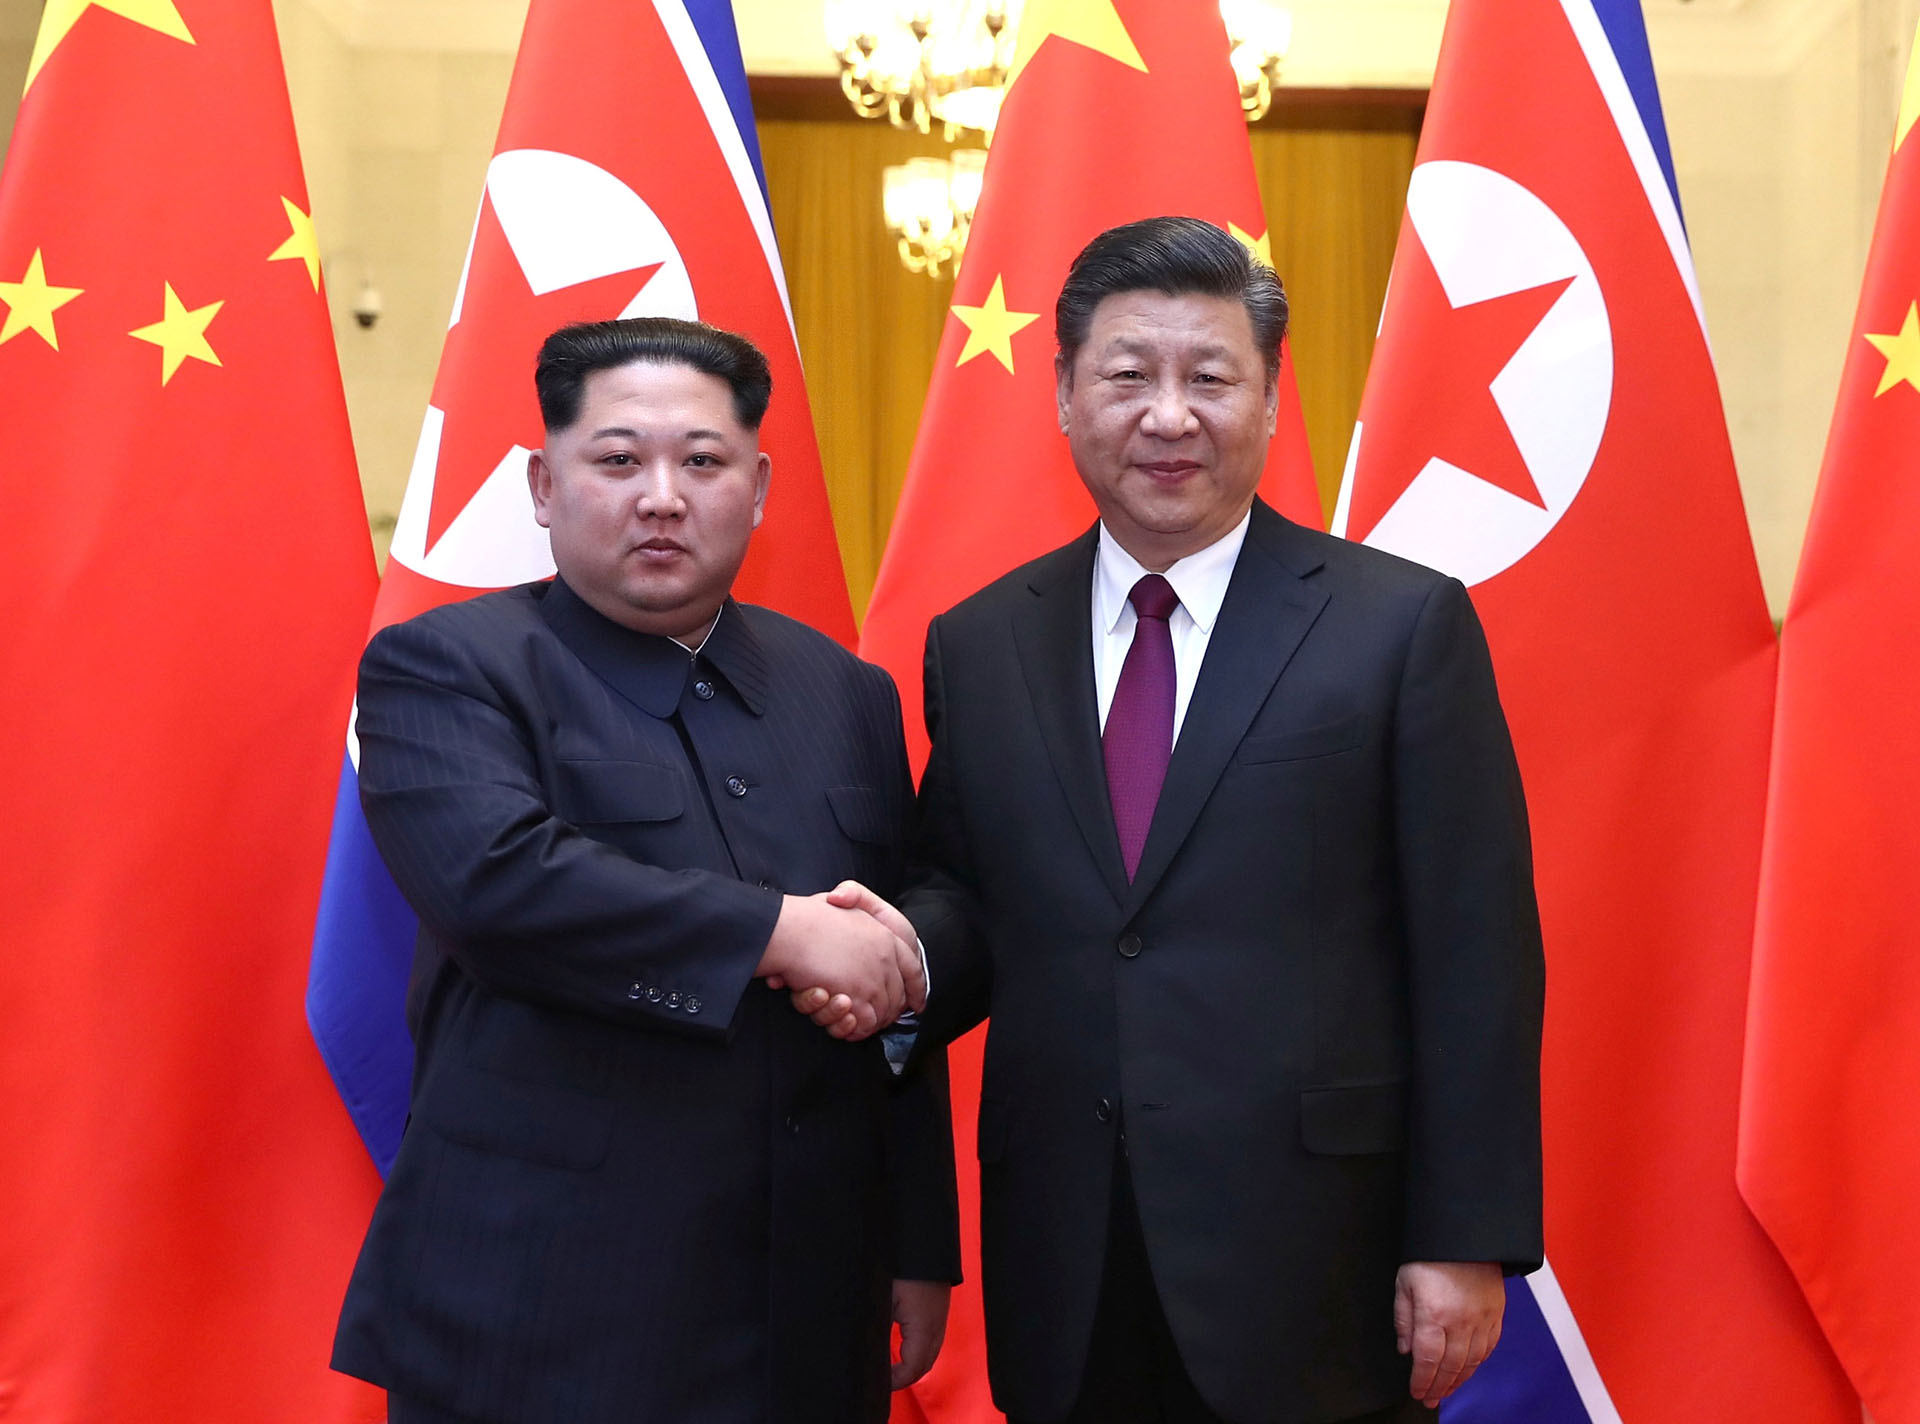 El dictador norcoreano Kim Jong-un y el presidente chino Xi Jinping en Beijing, China, en marzo de 2018 (Ju Peng/Xinhua via REUTERS)